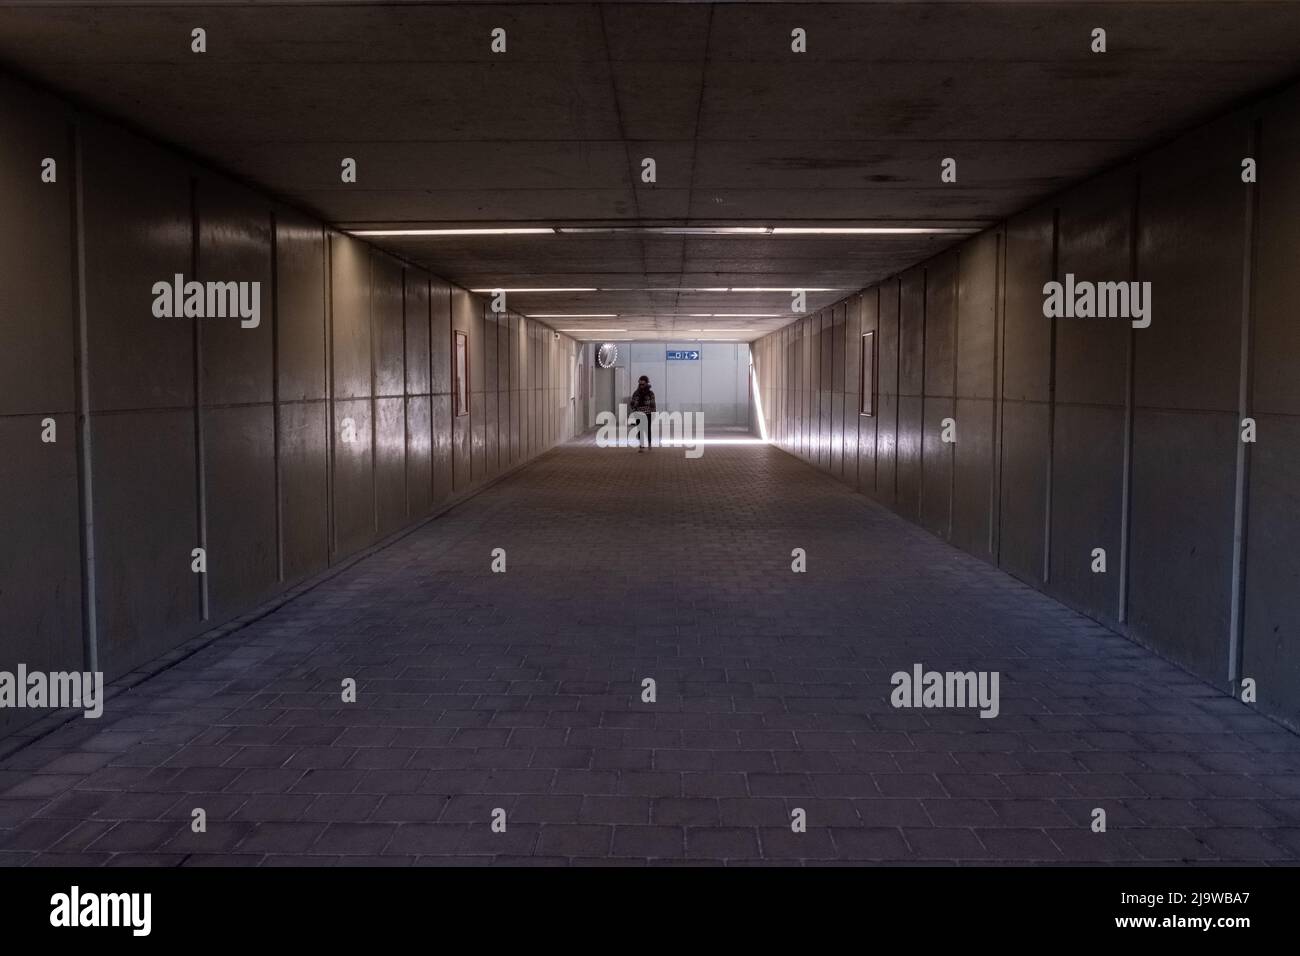 La donna cammina lungo il tunnel verso la luce. Silhouette di una donna che cammina nel sottopasso. Foto di alta qualità Foto Stock